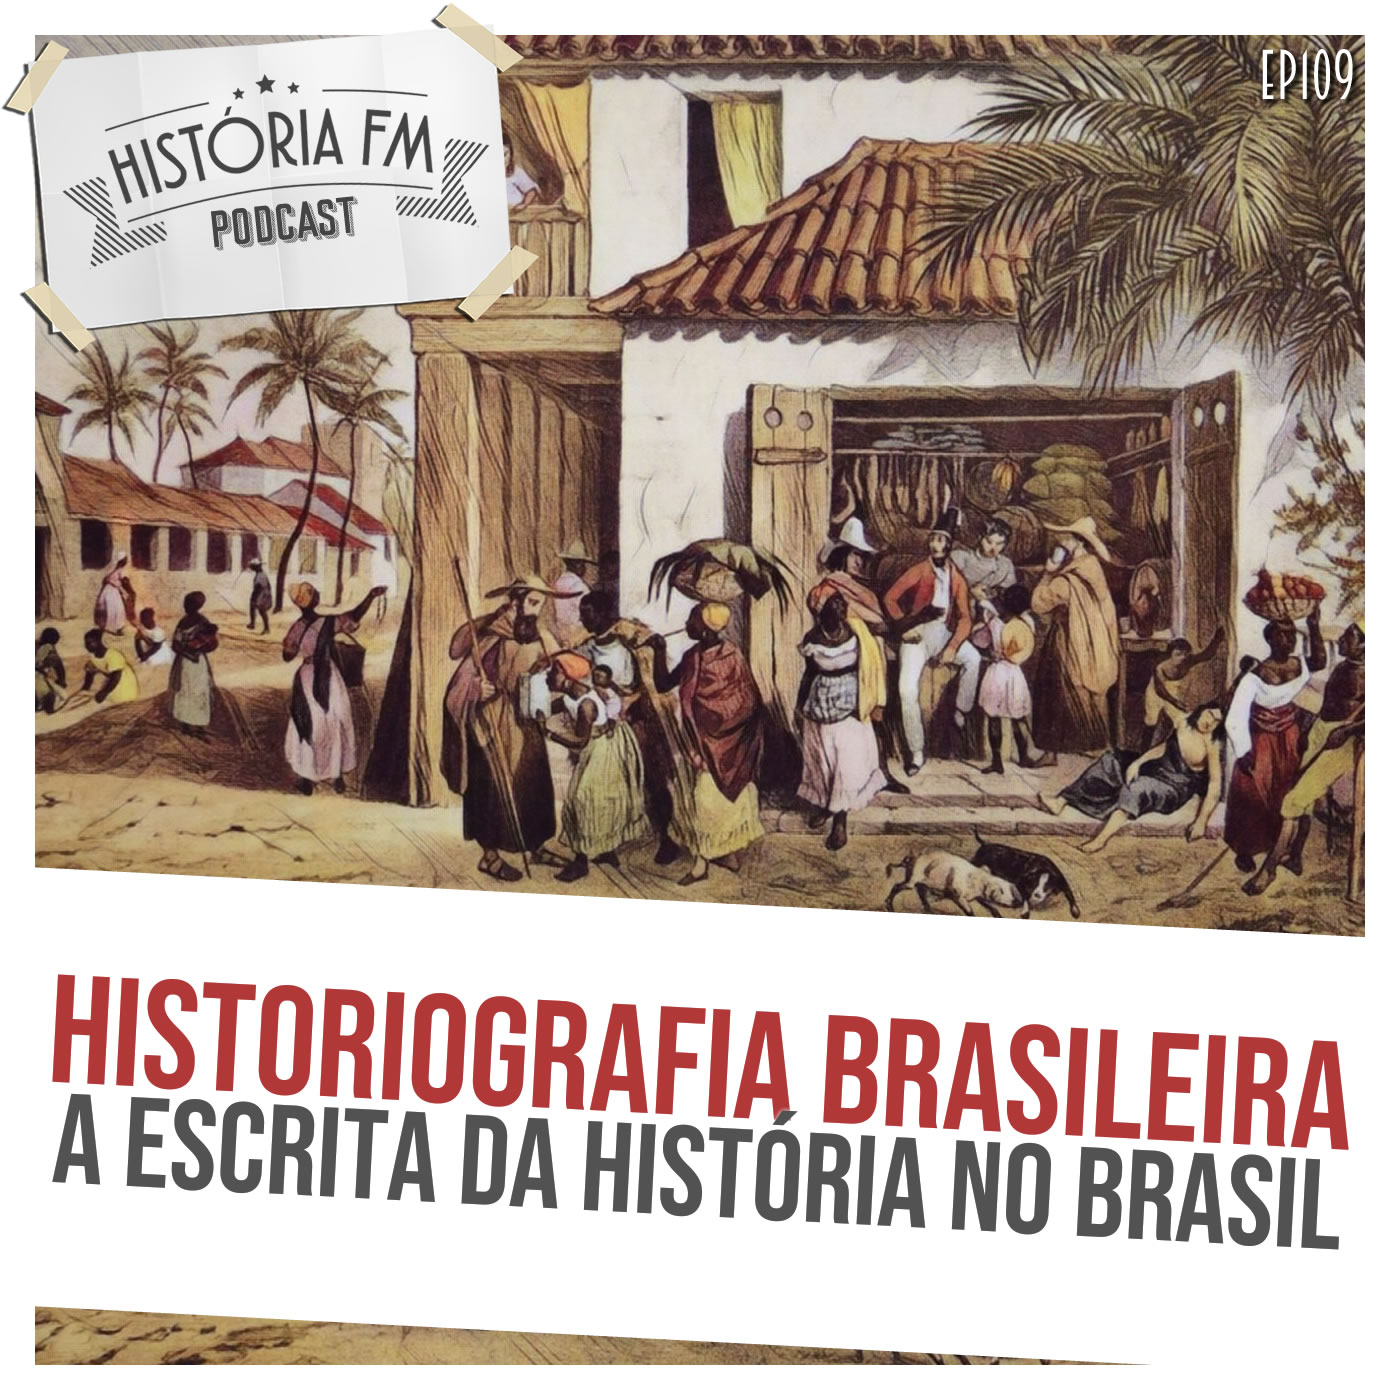 Historiografia Brasileira: a escrita da História no Brasil